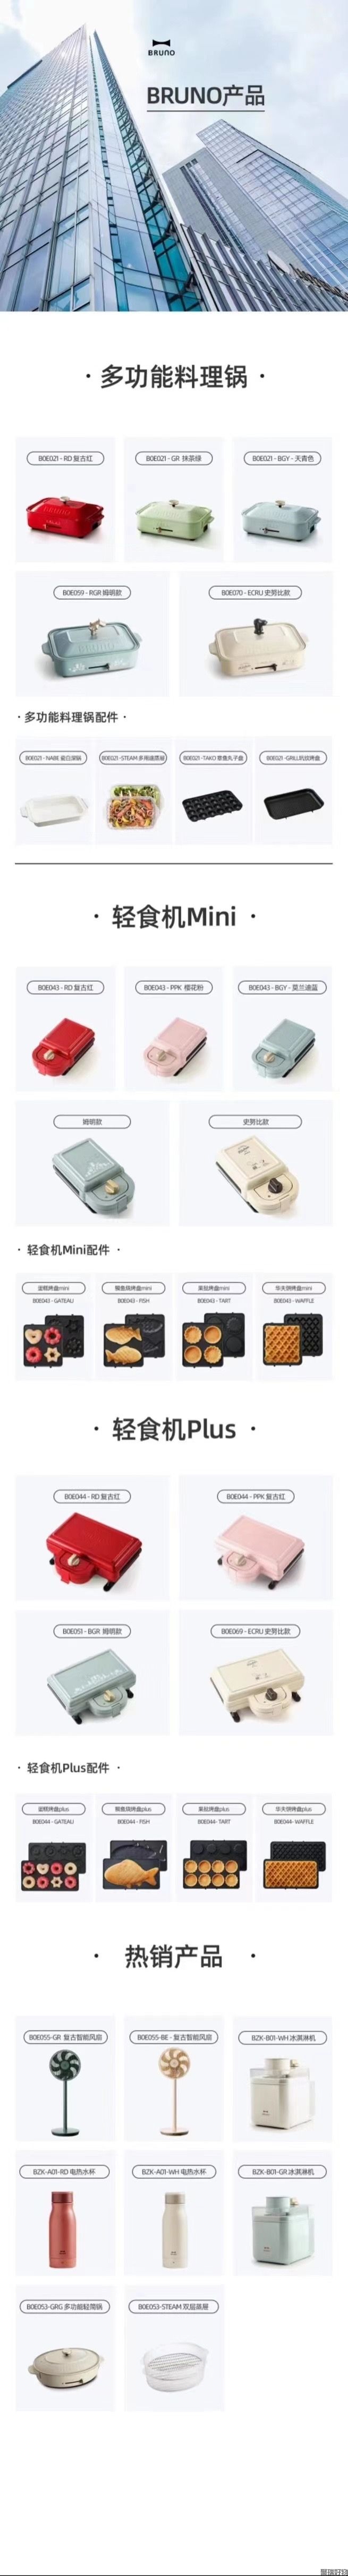 日本broun电器全系列网红小家电品牌(图1)